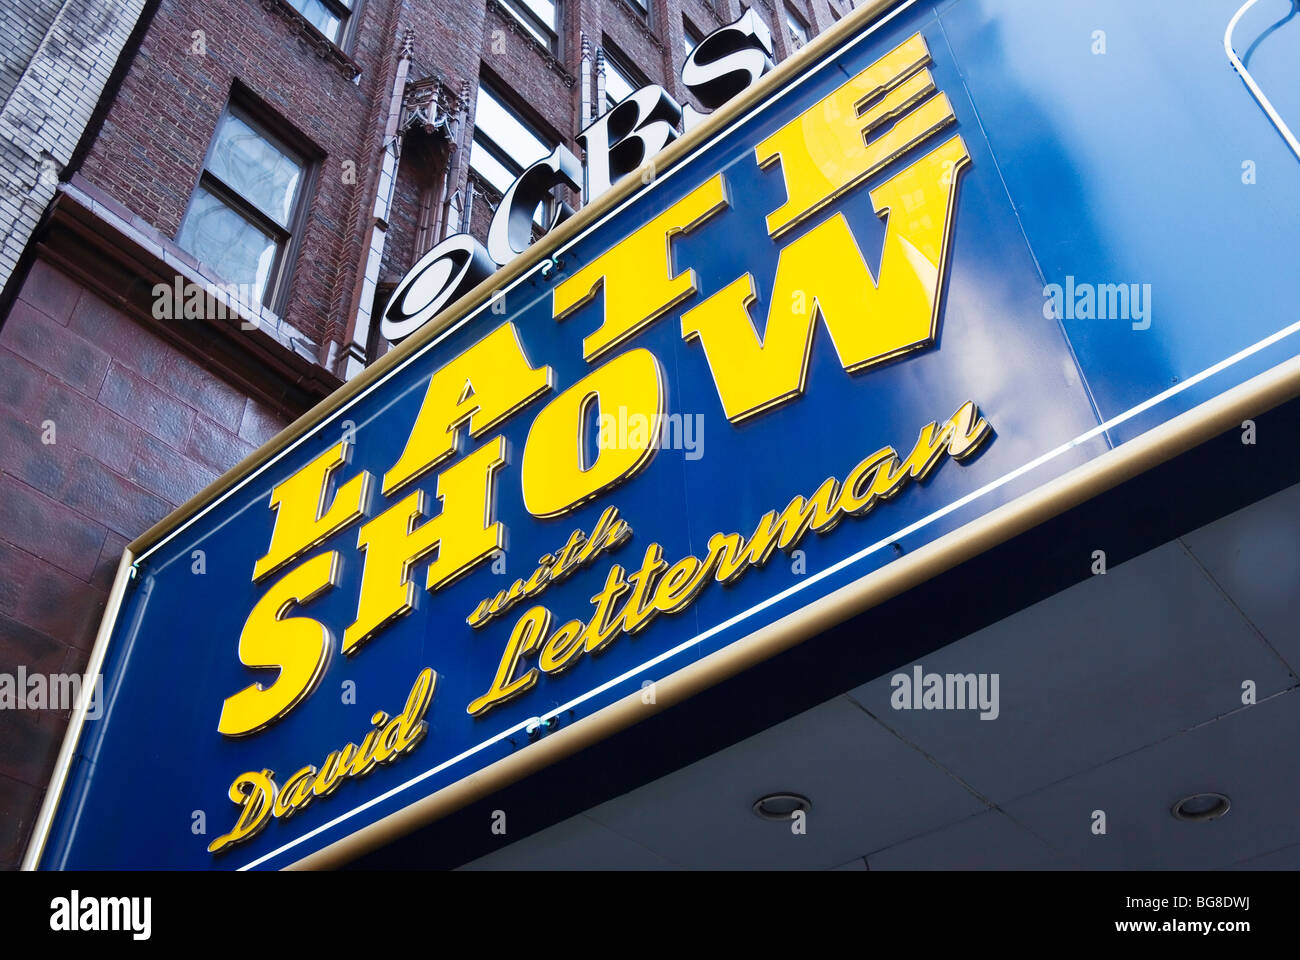 David Letterman Late Show Schild, Außenansicht des Gebäudes, Manhattan, New York City, New York, USA Stockfoto